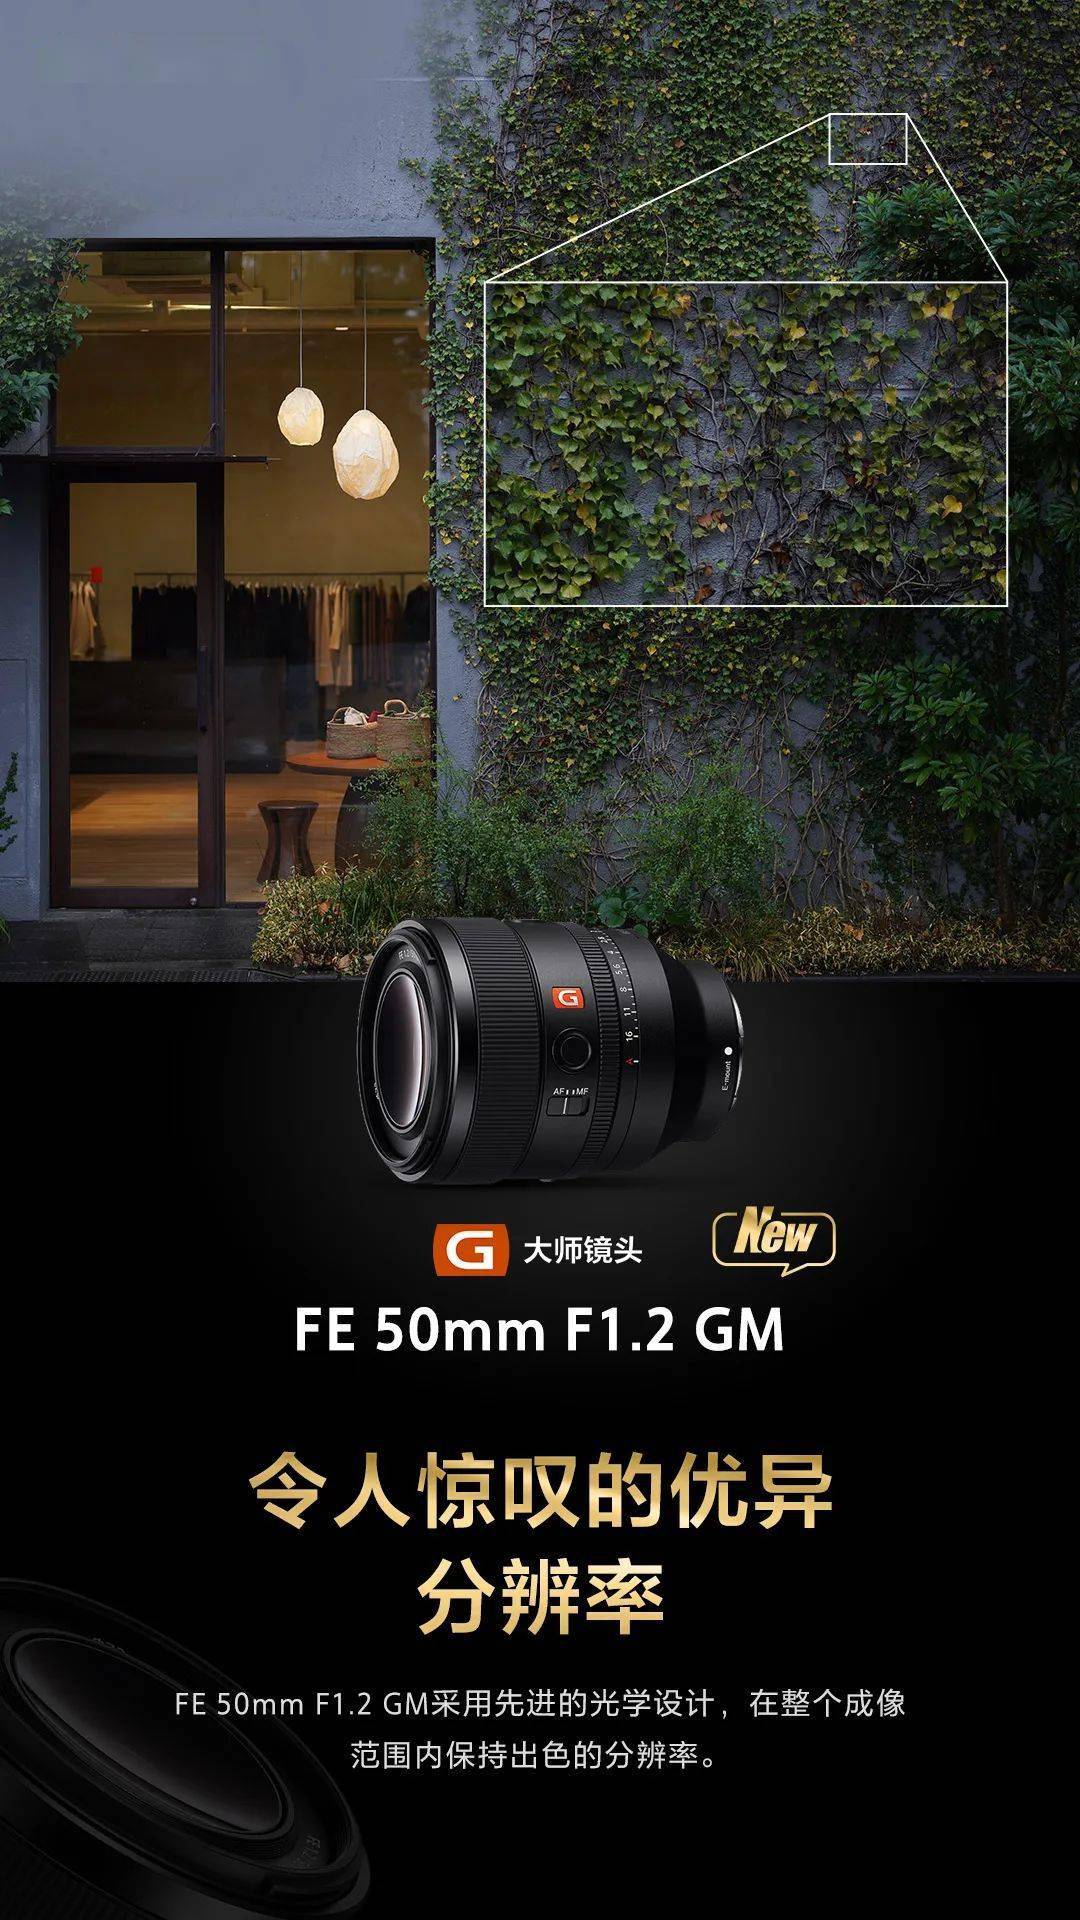 预售开启 索尼g大师镜头fe 50mm f1.2 gm